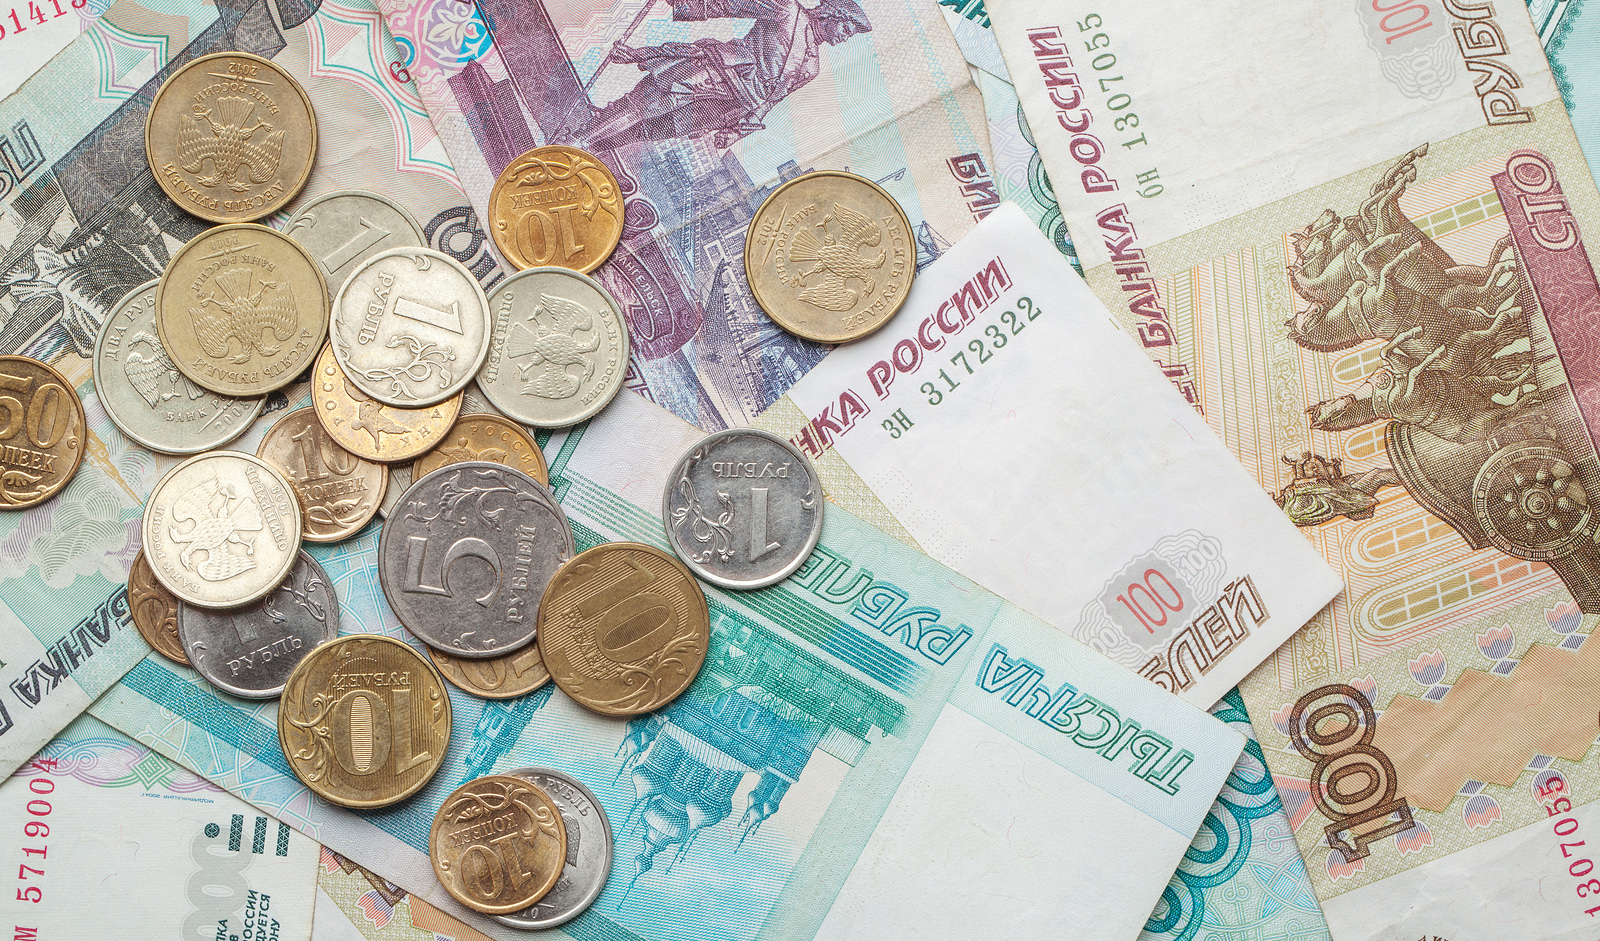 سقوط ۳۰ درصدی ارزش روبل در برابر دلار